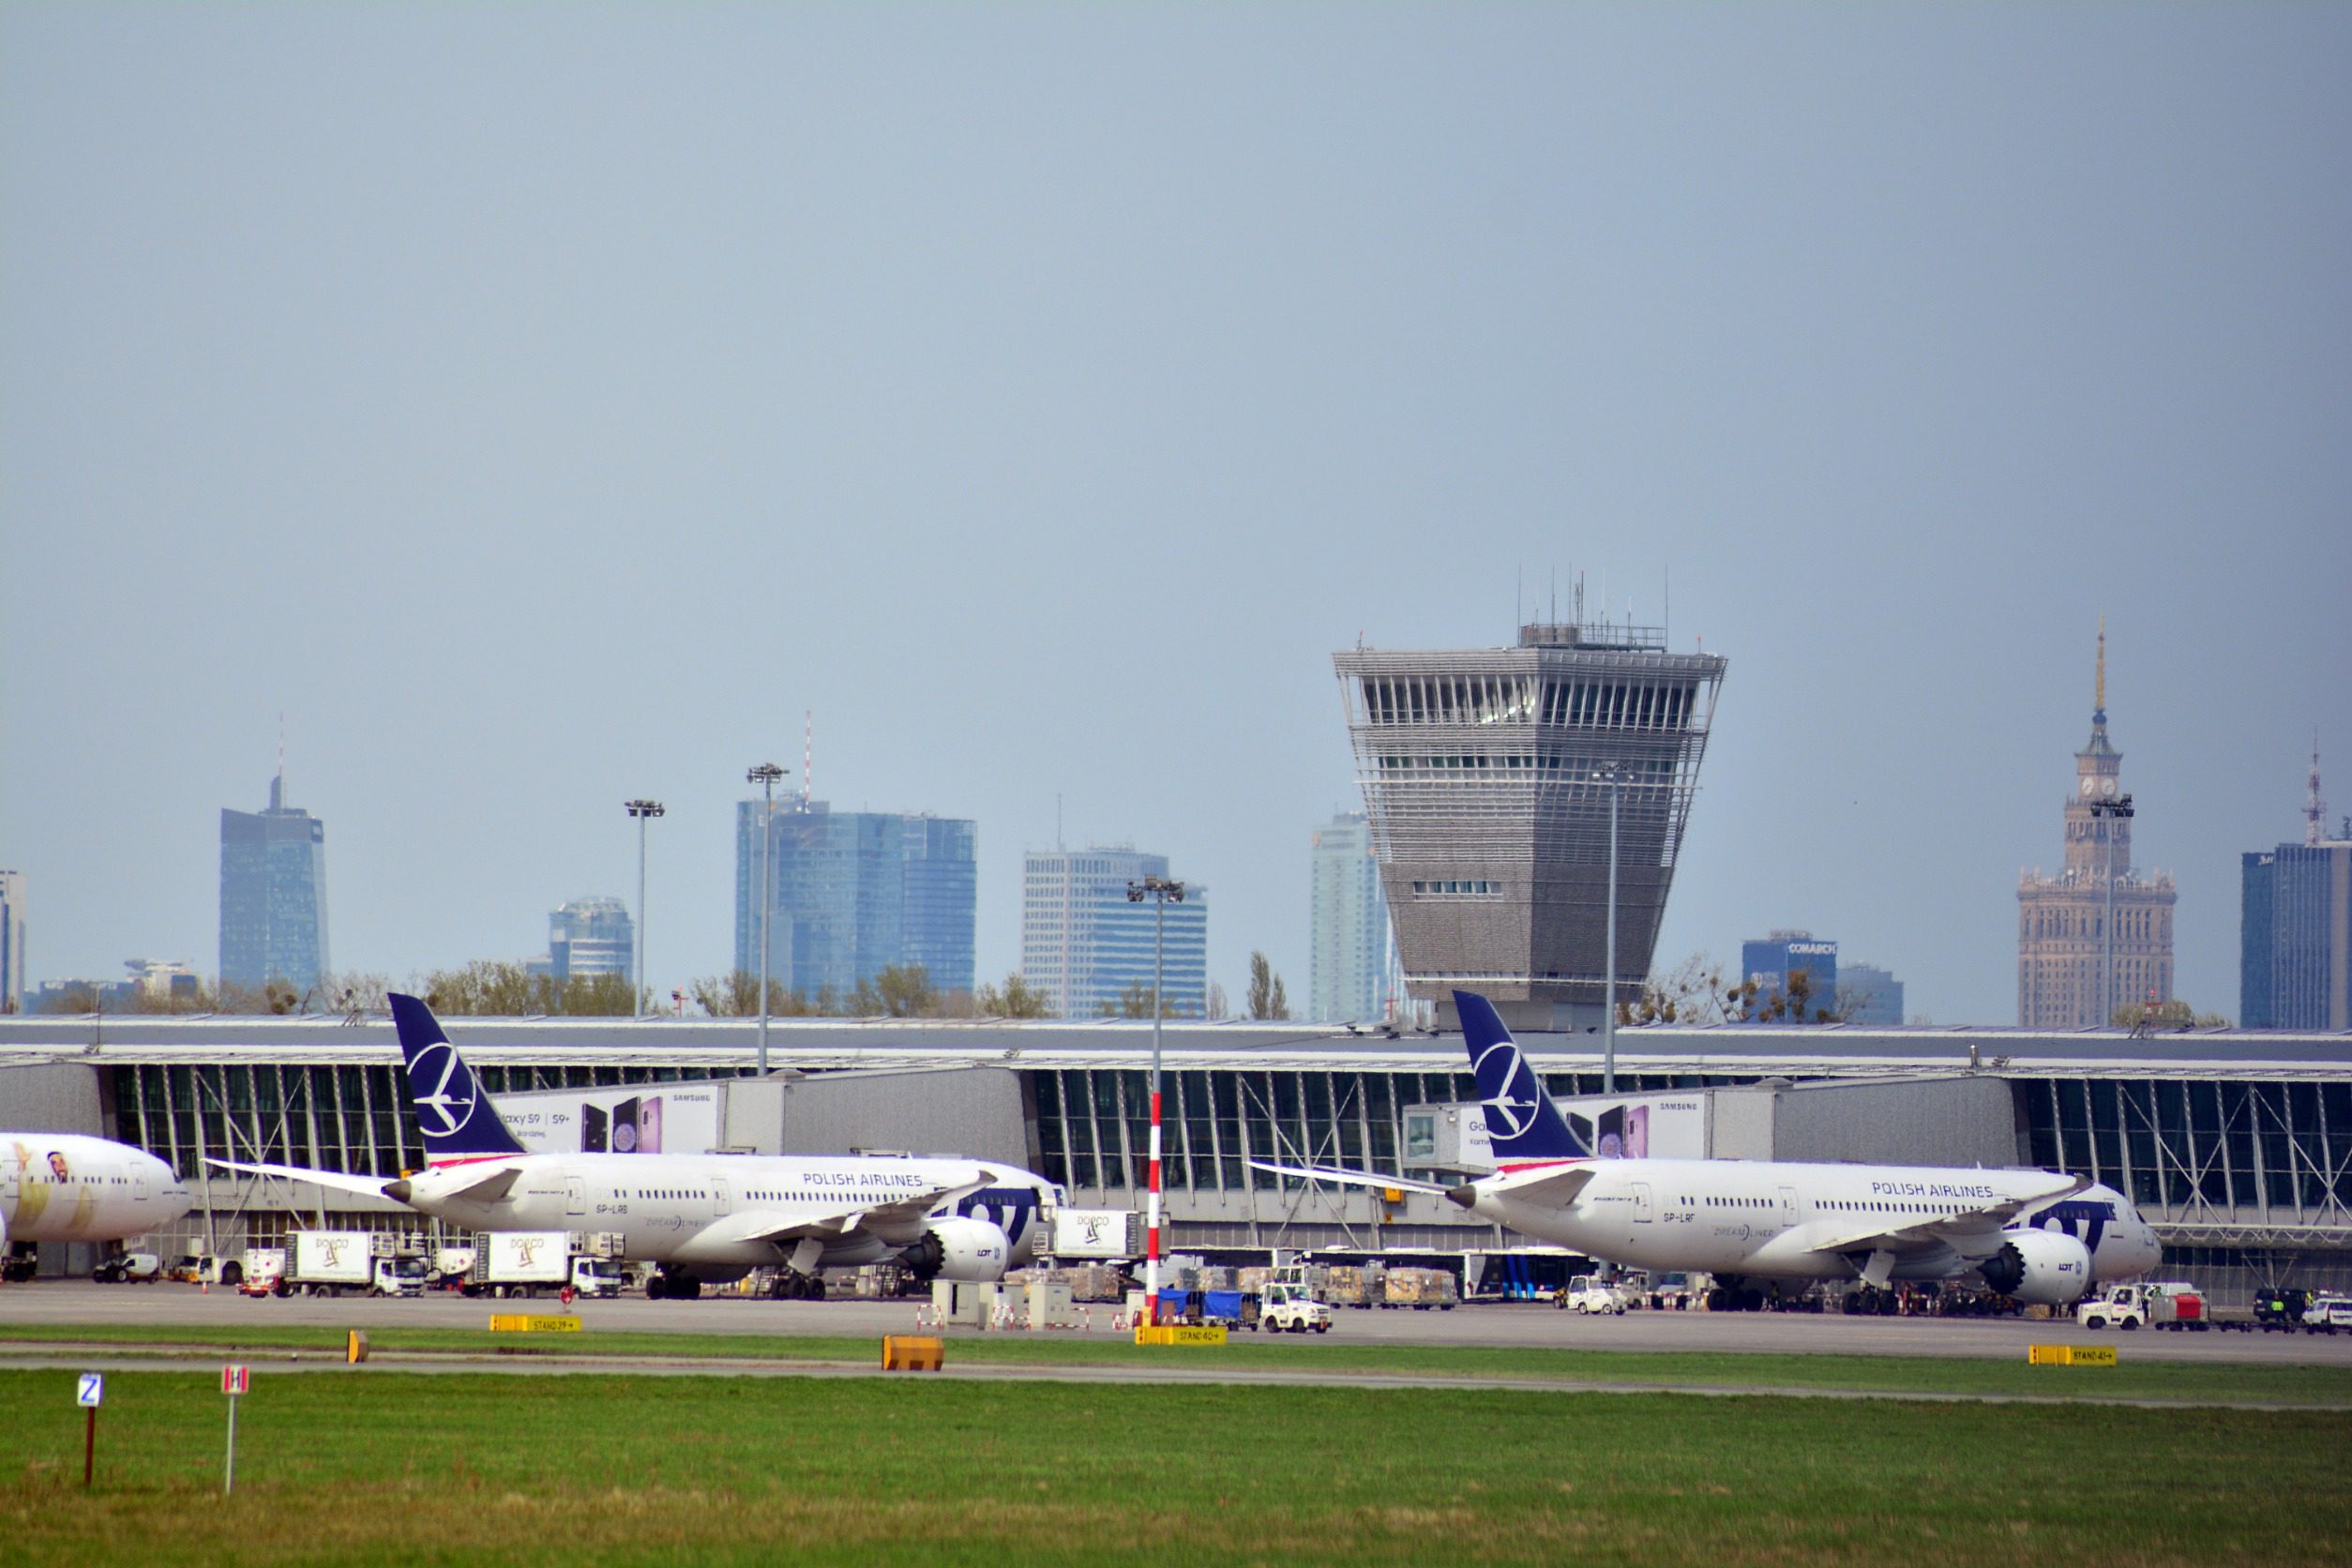 samoloty Boeing w barwach LOT na lotnisku Chopin w Warszawie